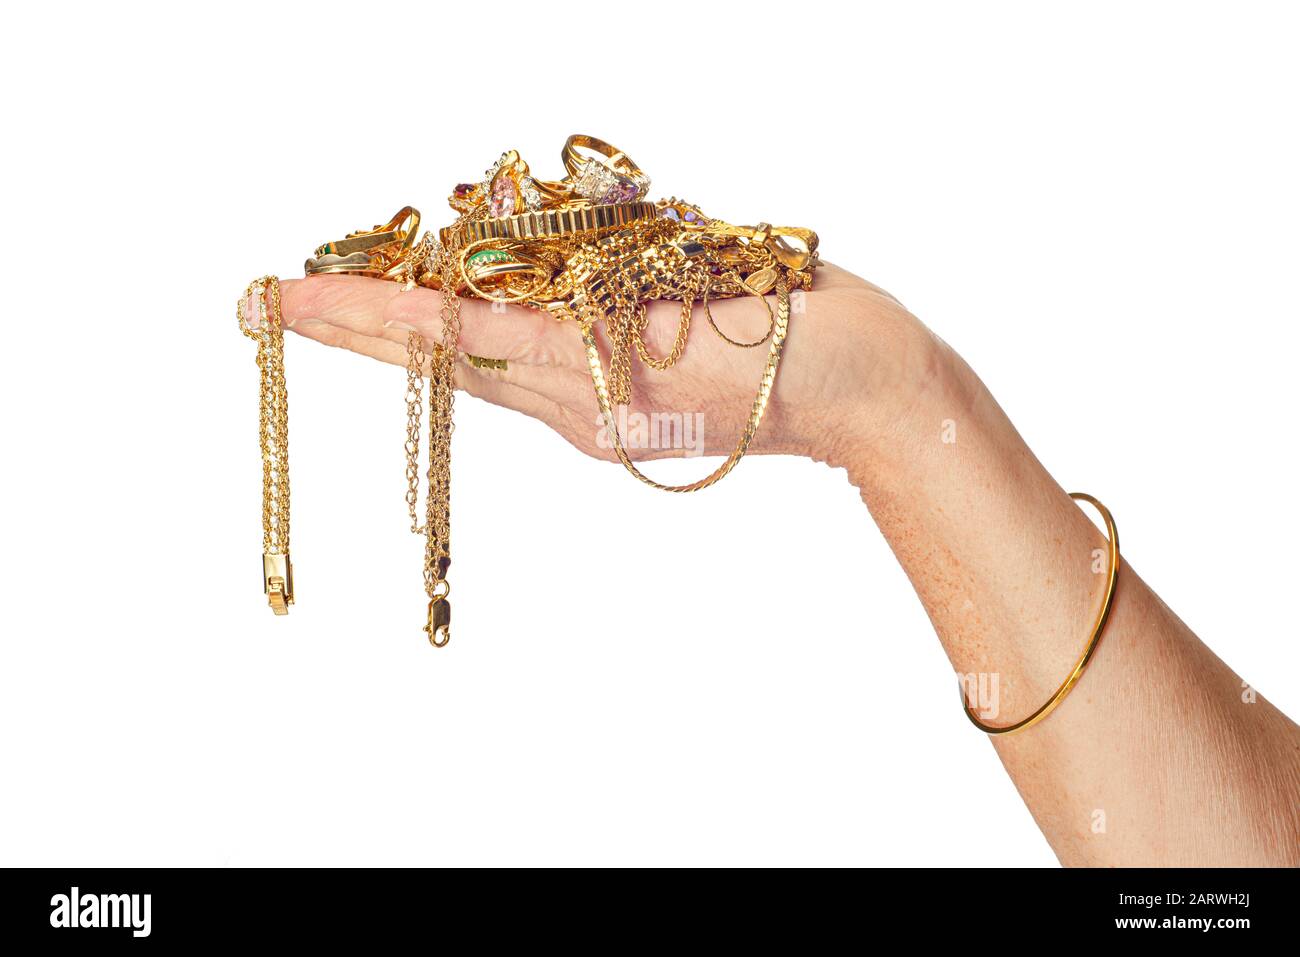 Colpo orizzontale della mano di una donna che tiene un mucchio di gioielli d’oro alcuni dei quali sono appesi dalla sua mano. Indossa anche un braccialetto. Isolato Foto Stock